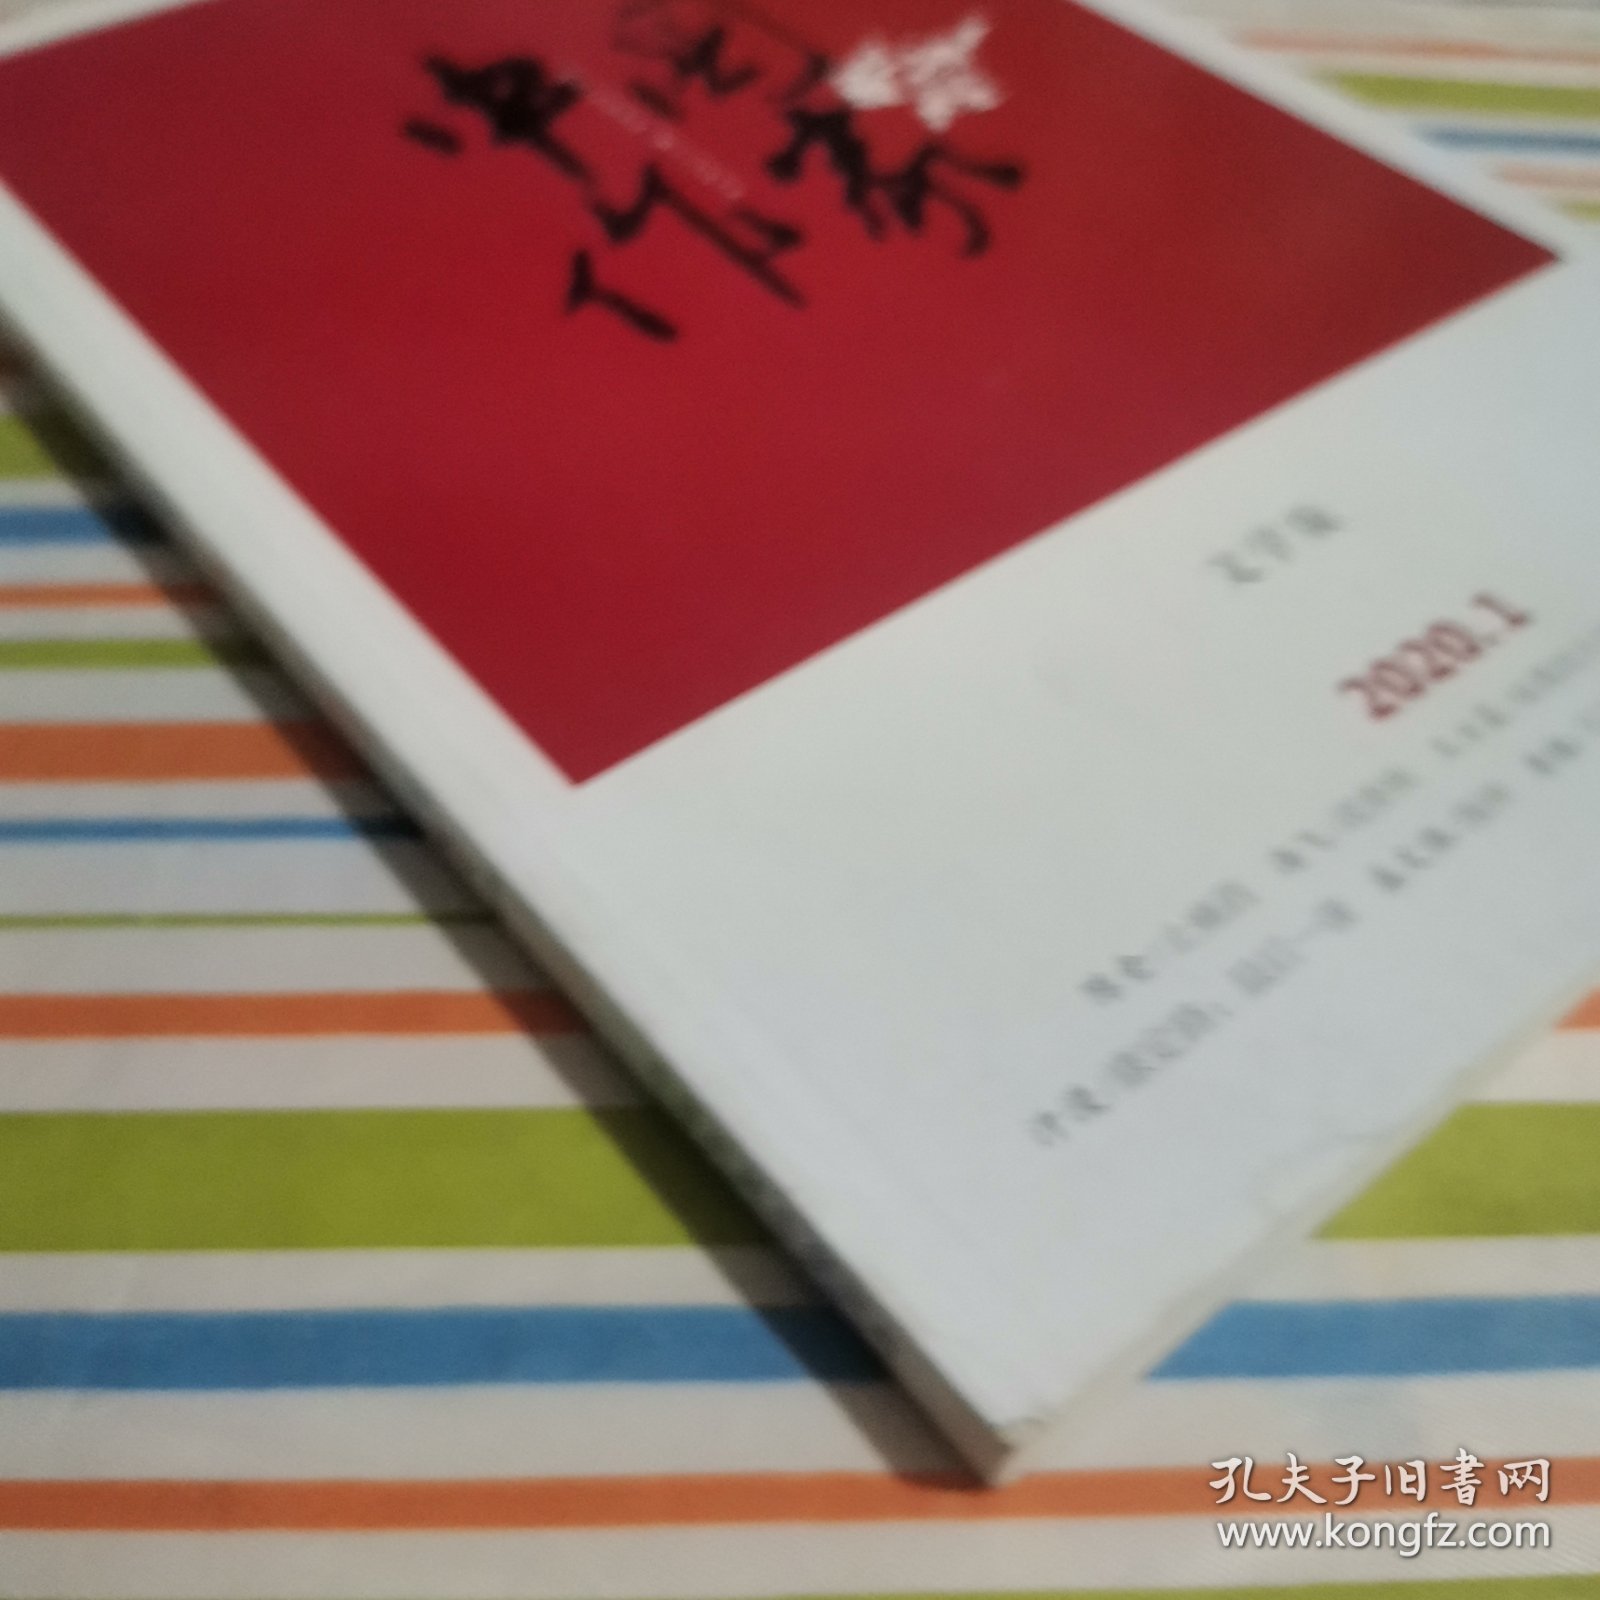 中国作家 文学版 2020.1